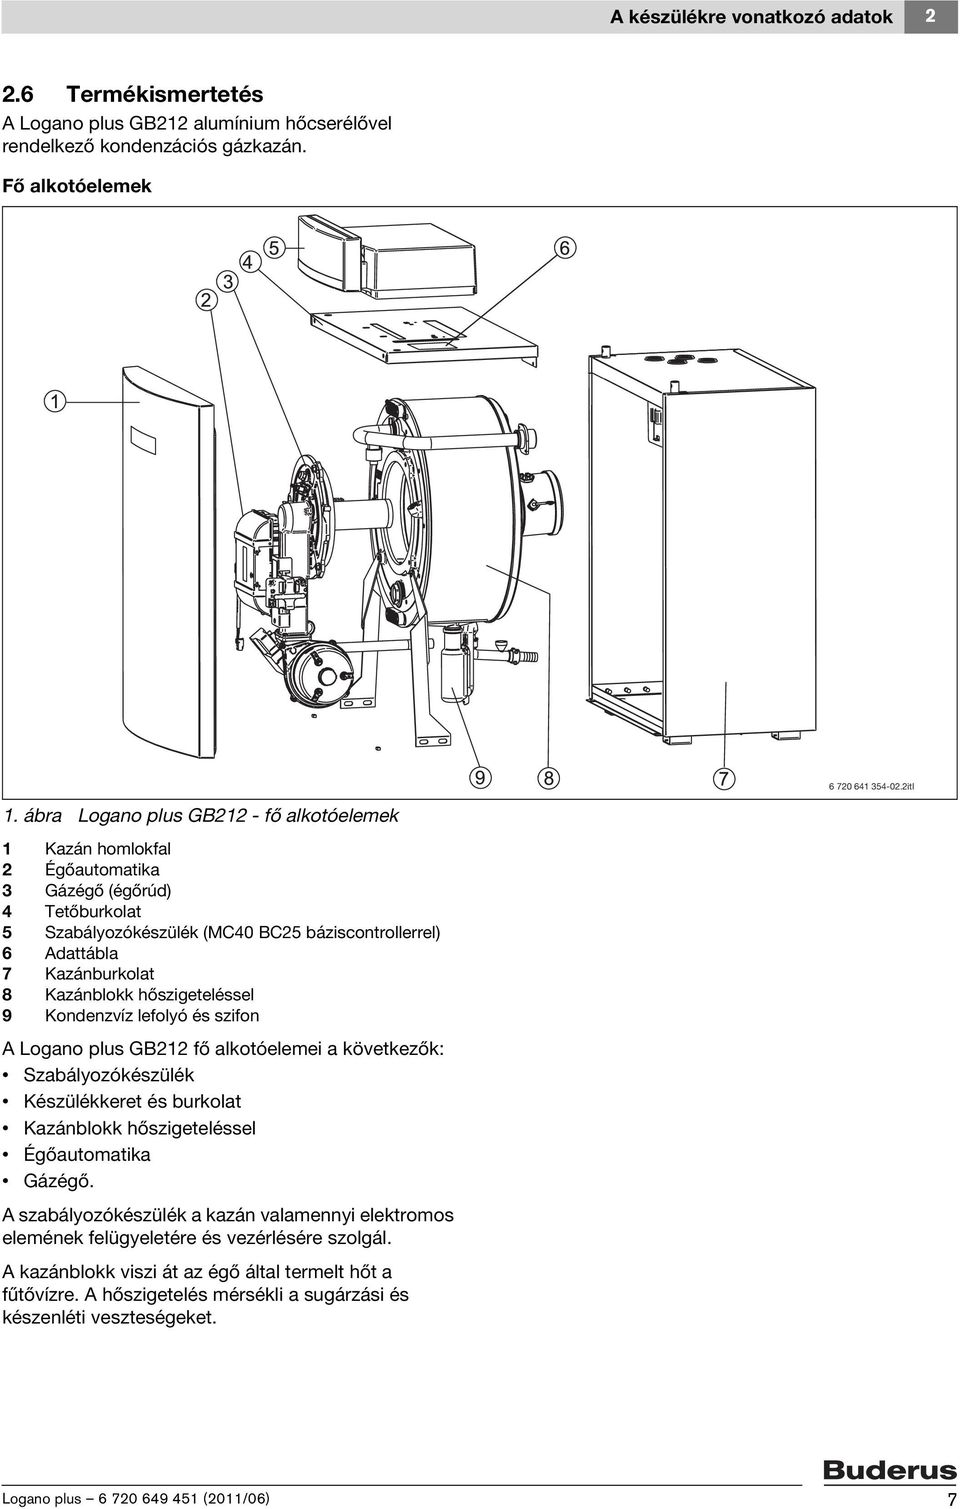 Kazánblokk hőszigeteléssel 9 Kondenzvíz lefolyó és szifon A Logano plus GB212 fő alkotóelemei a következők: Szabályozókészülék Készülékkeret és burkolat Kazánblokk hőszigeteléssel Égőautomatika